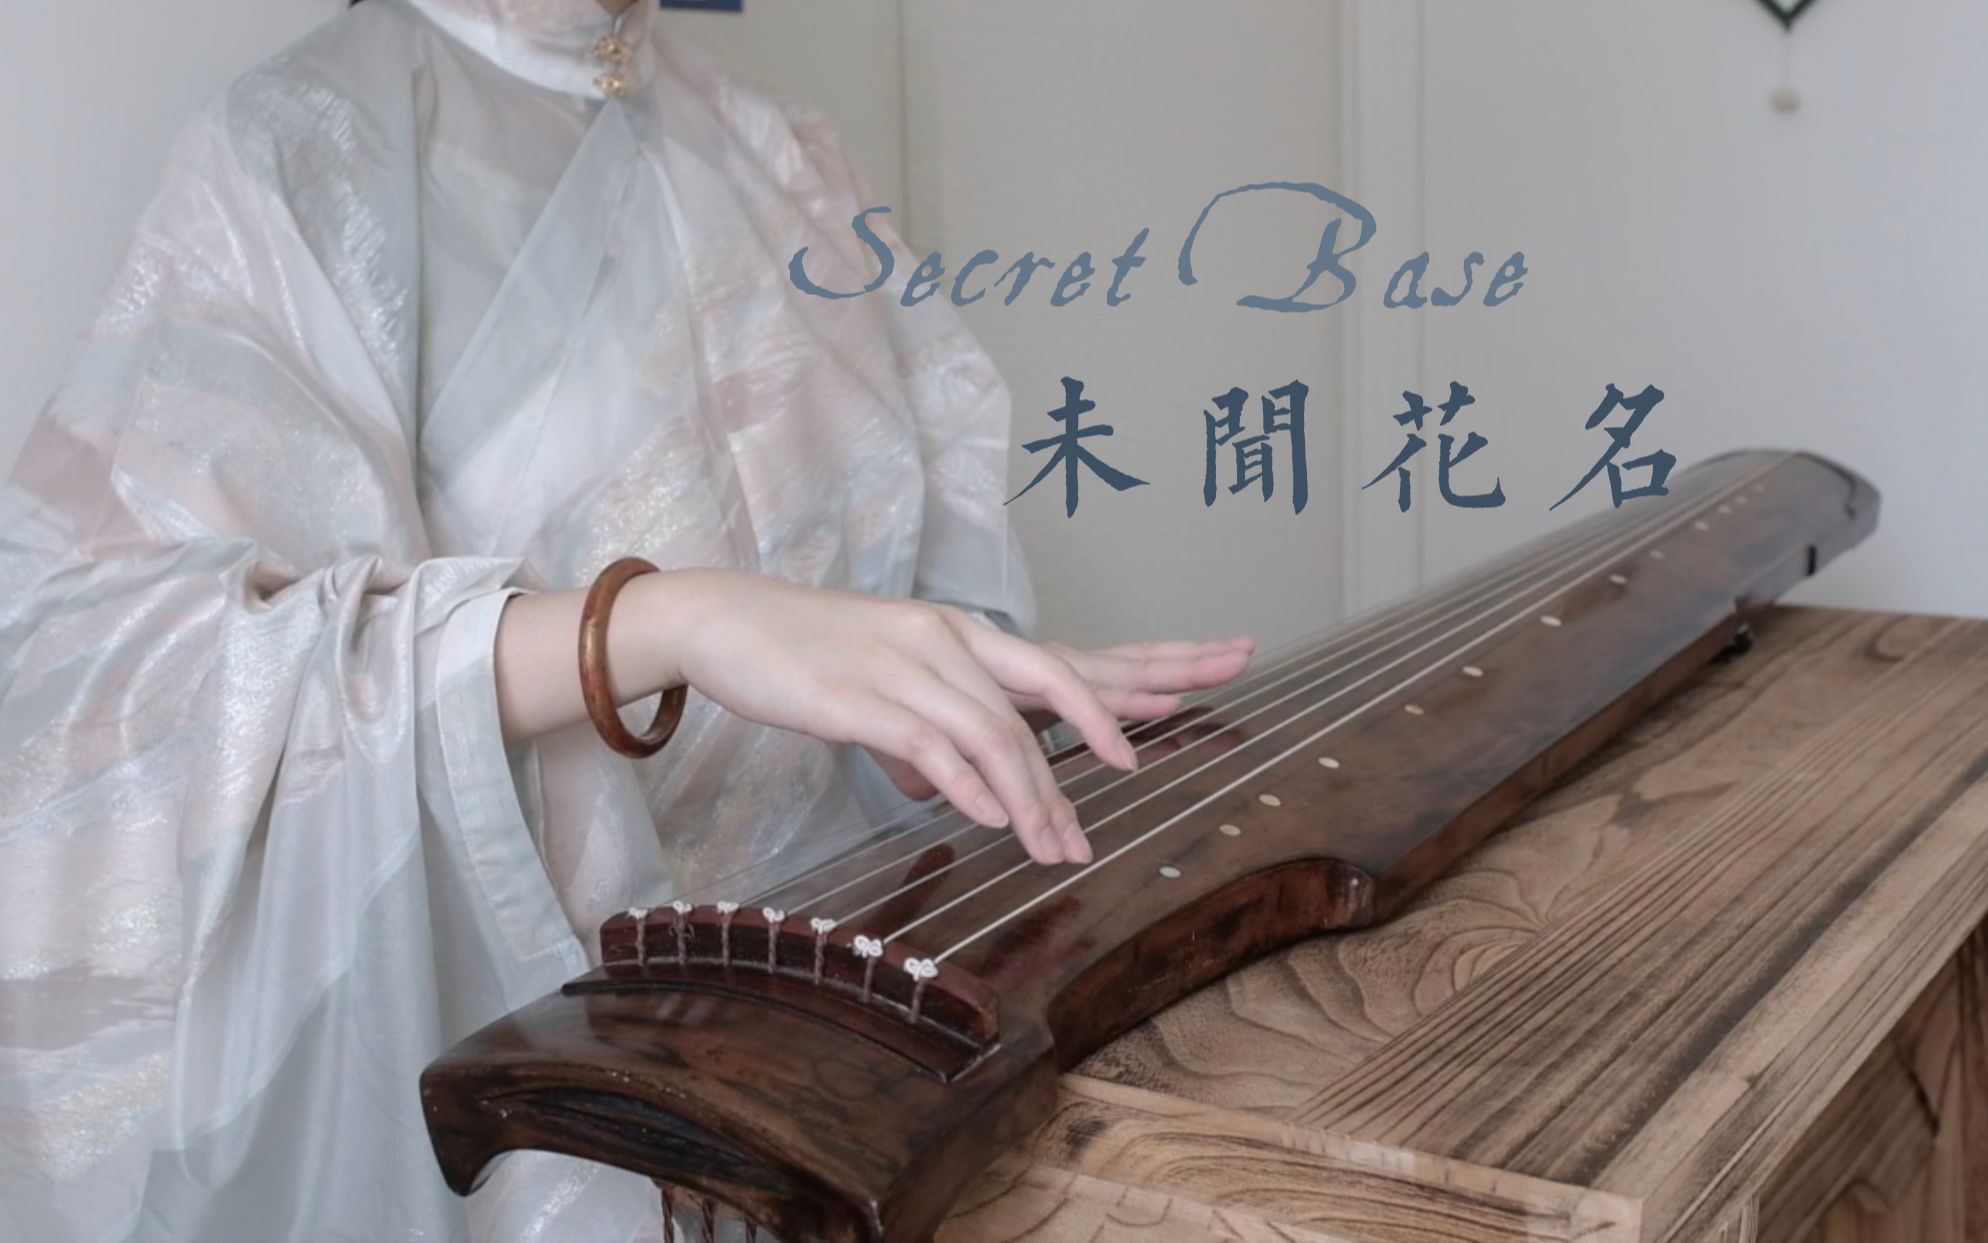 【古琴】《未闻花名》| 用古琴模仿吉他指弹 | Secret Base〜君がくれたもの〜